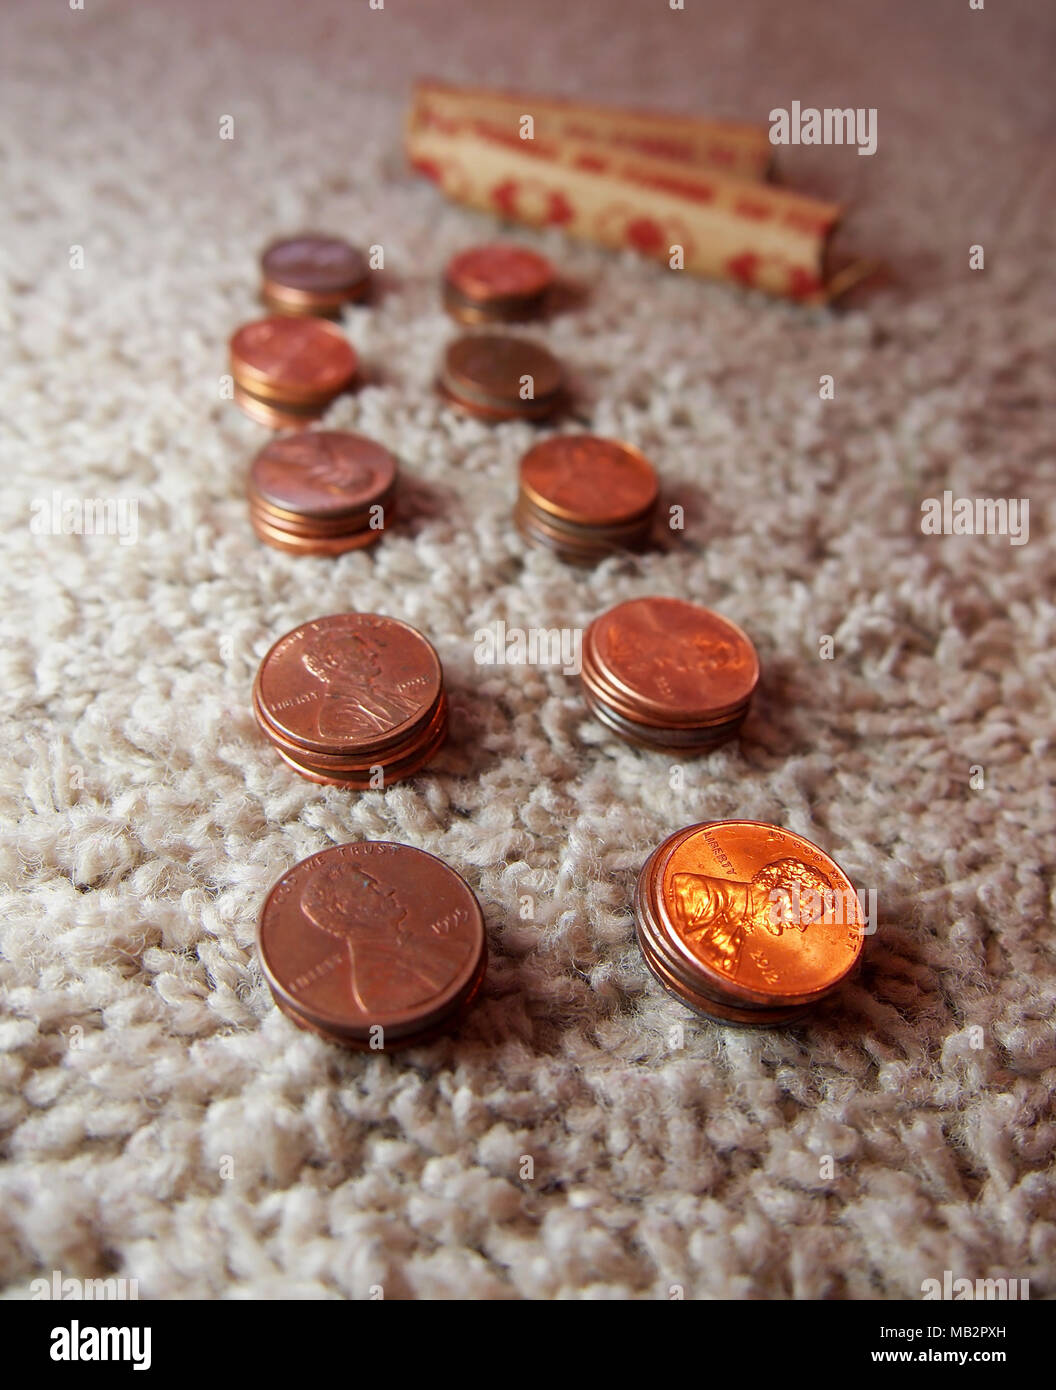 Des piles de pièces d'un Américain en cuivre sont alignés sur un tapis en préparation pour le mettre dans des rouleaux de papier 50. Banque D'Images